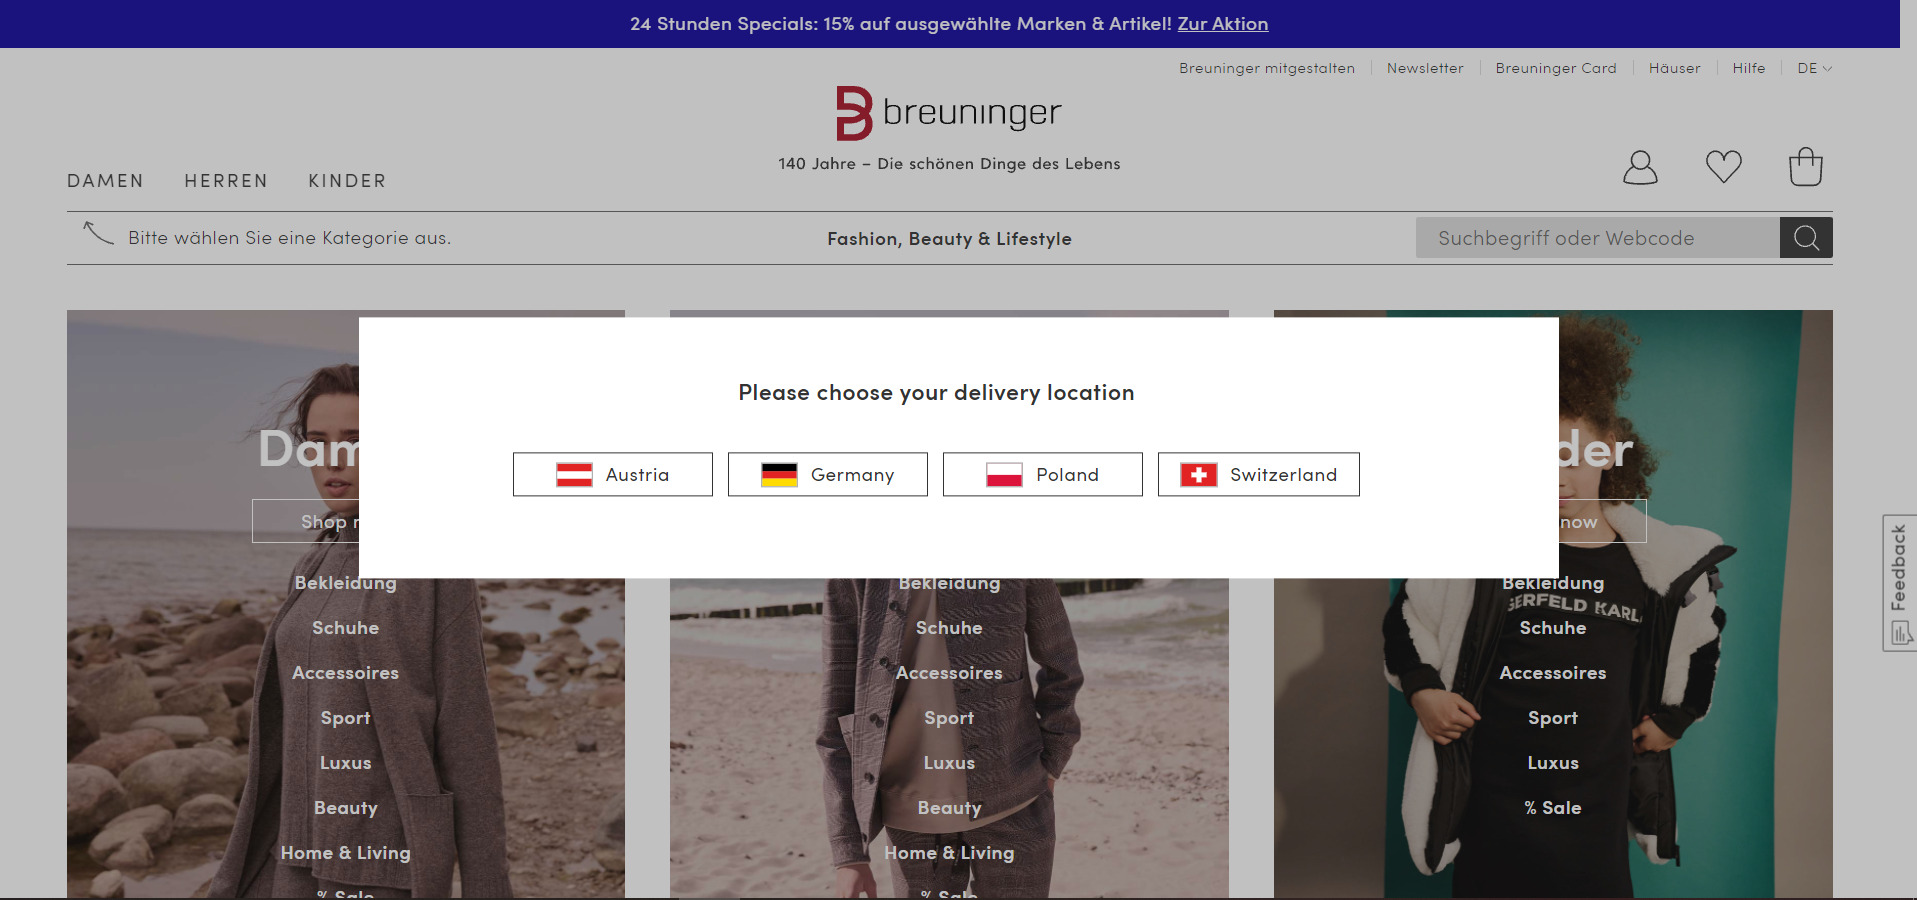 Breuninger expandiert Online - Stationär ist man nur in Deutschland präsent